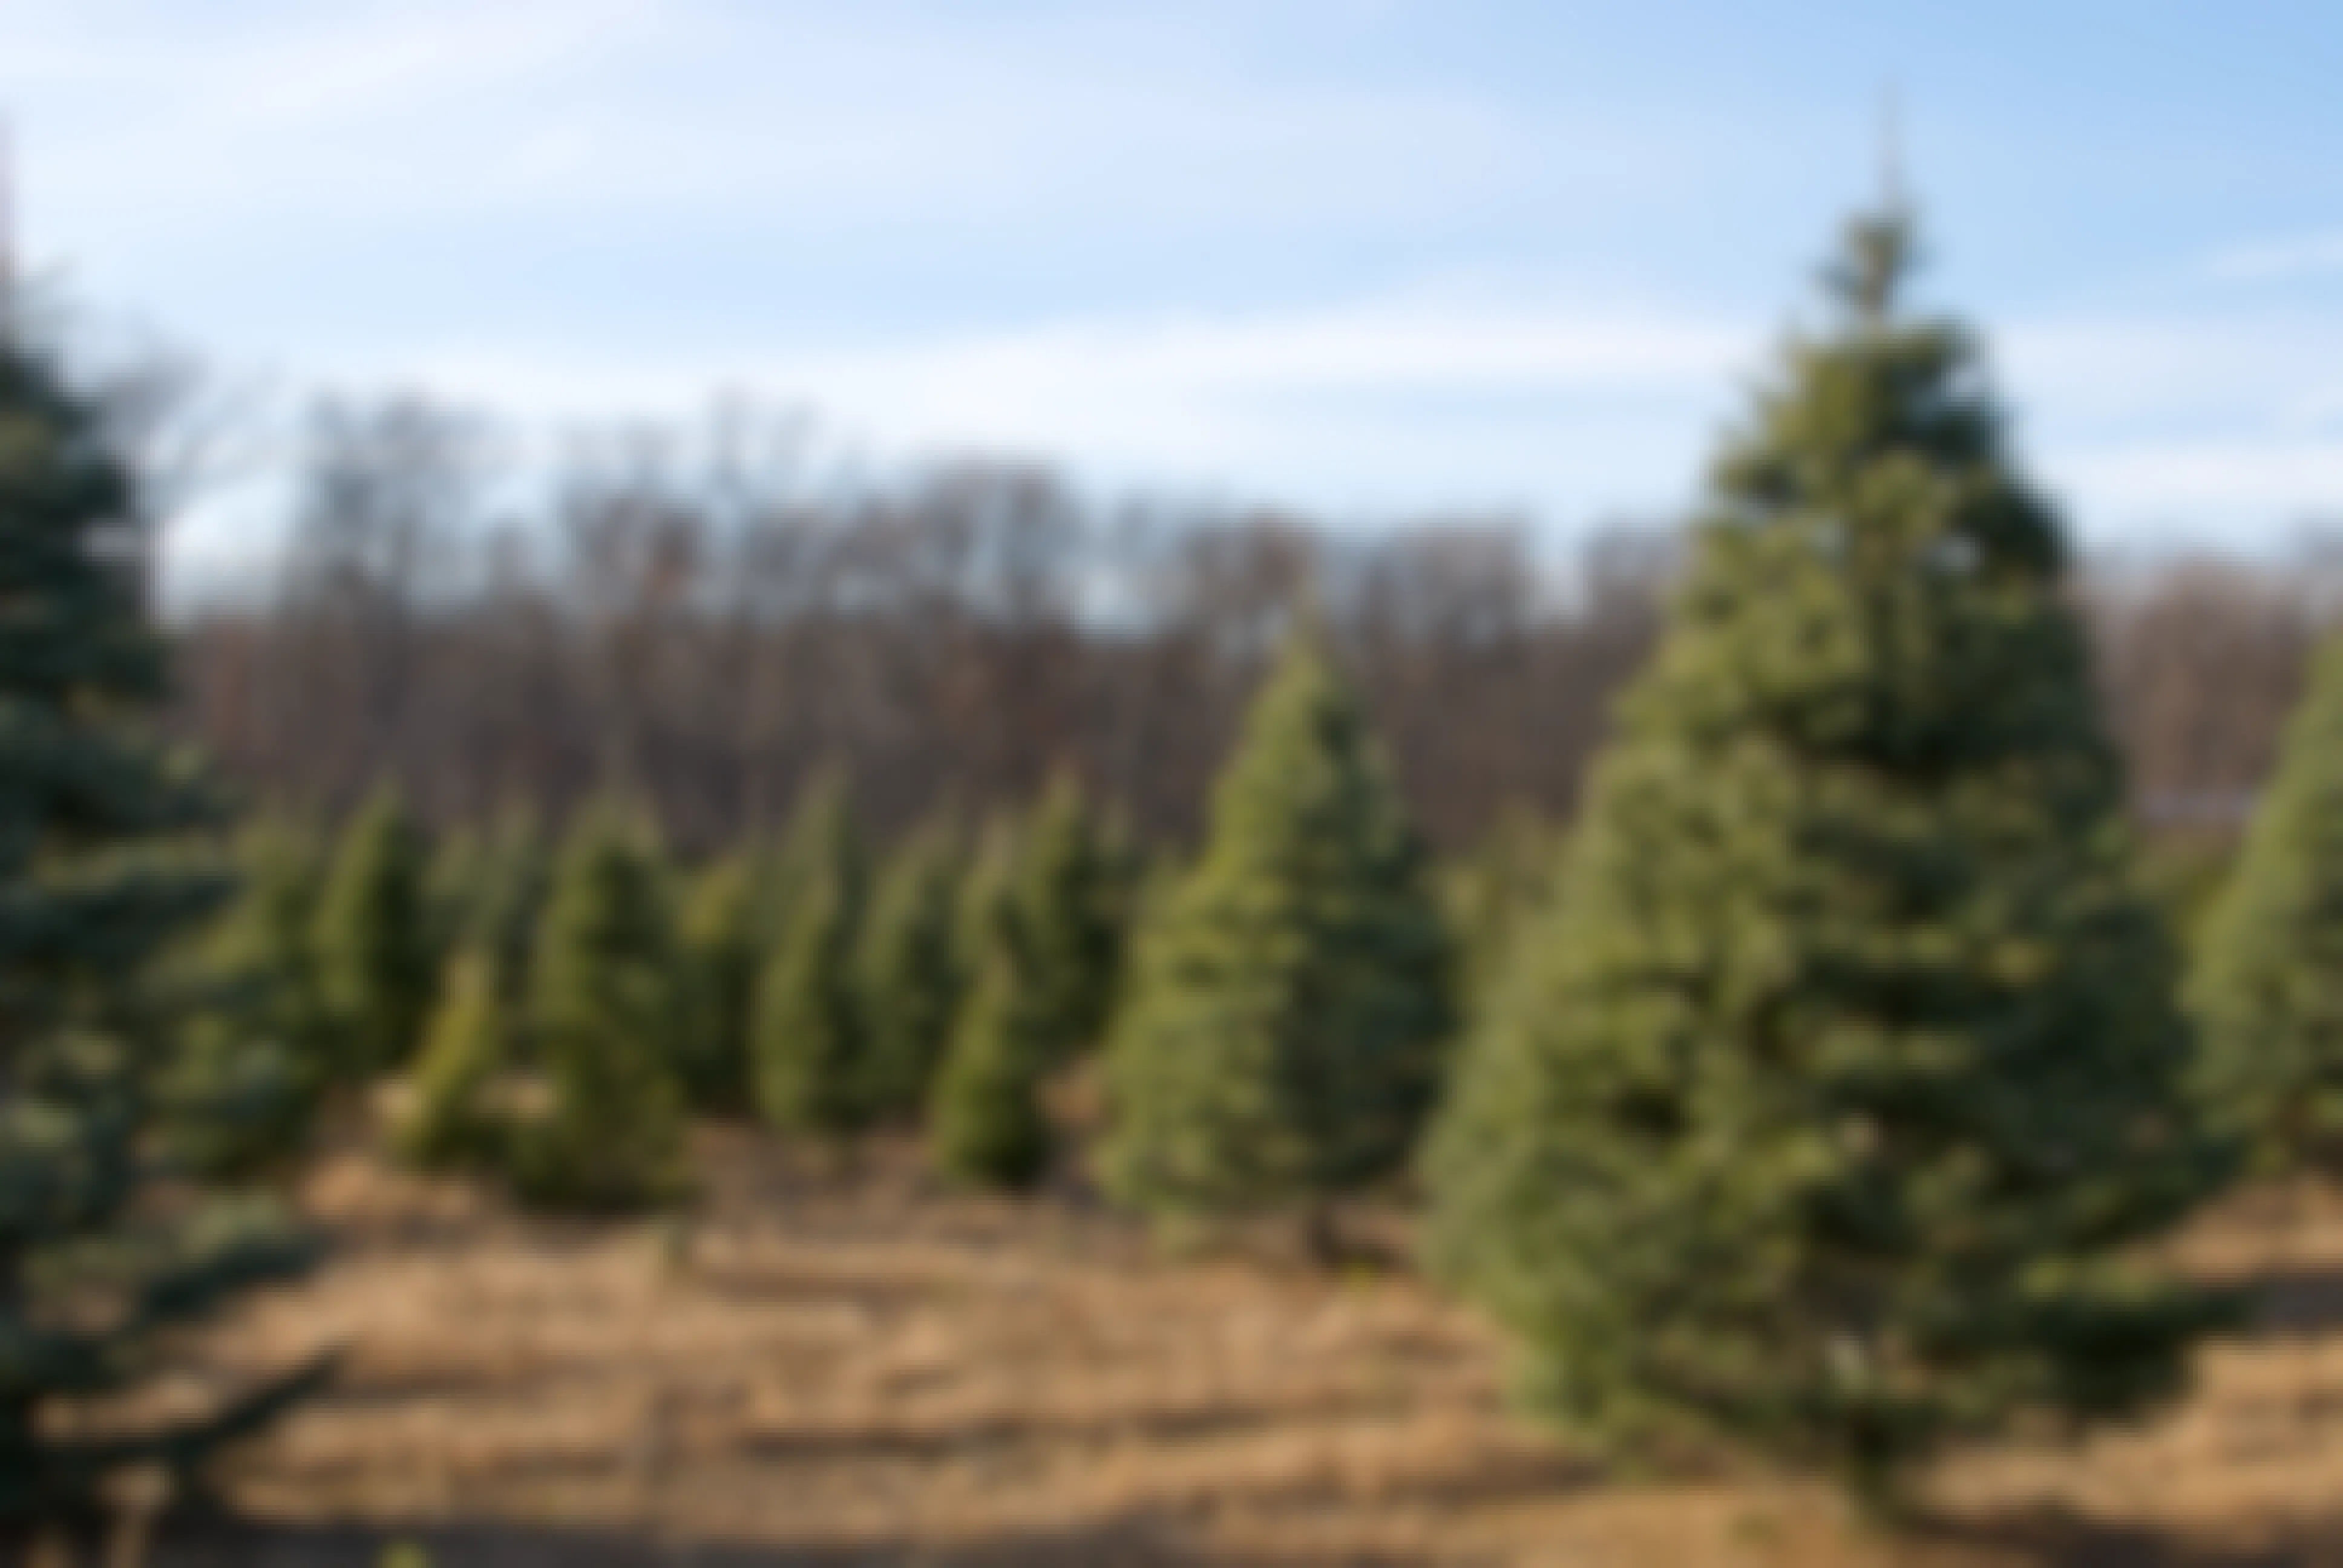 Christmas tree farm